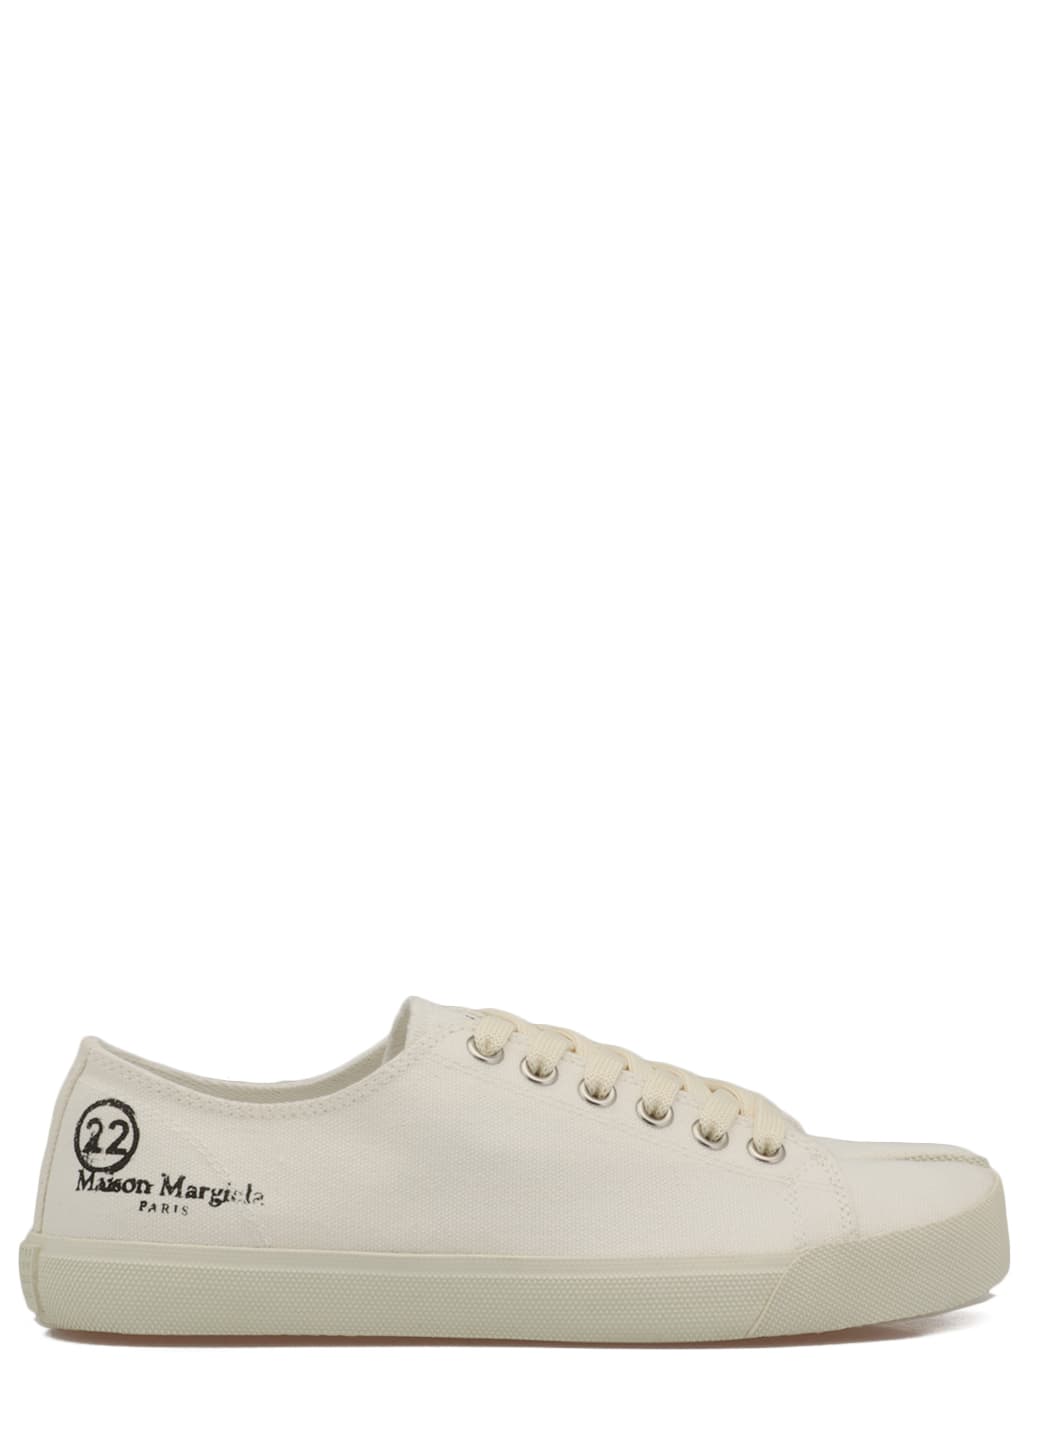 Buy Maison Margiela Tabi Sneaker (price in US$) Online | Shoe Trove